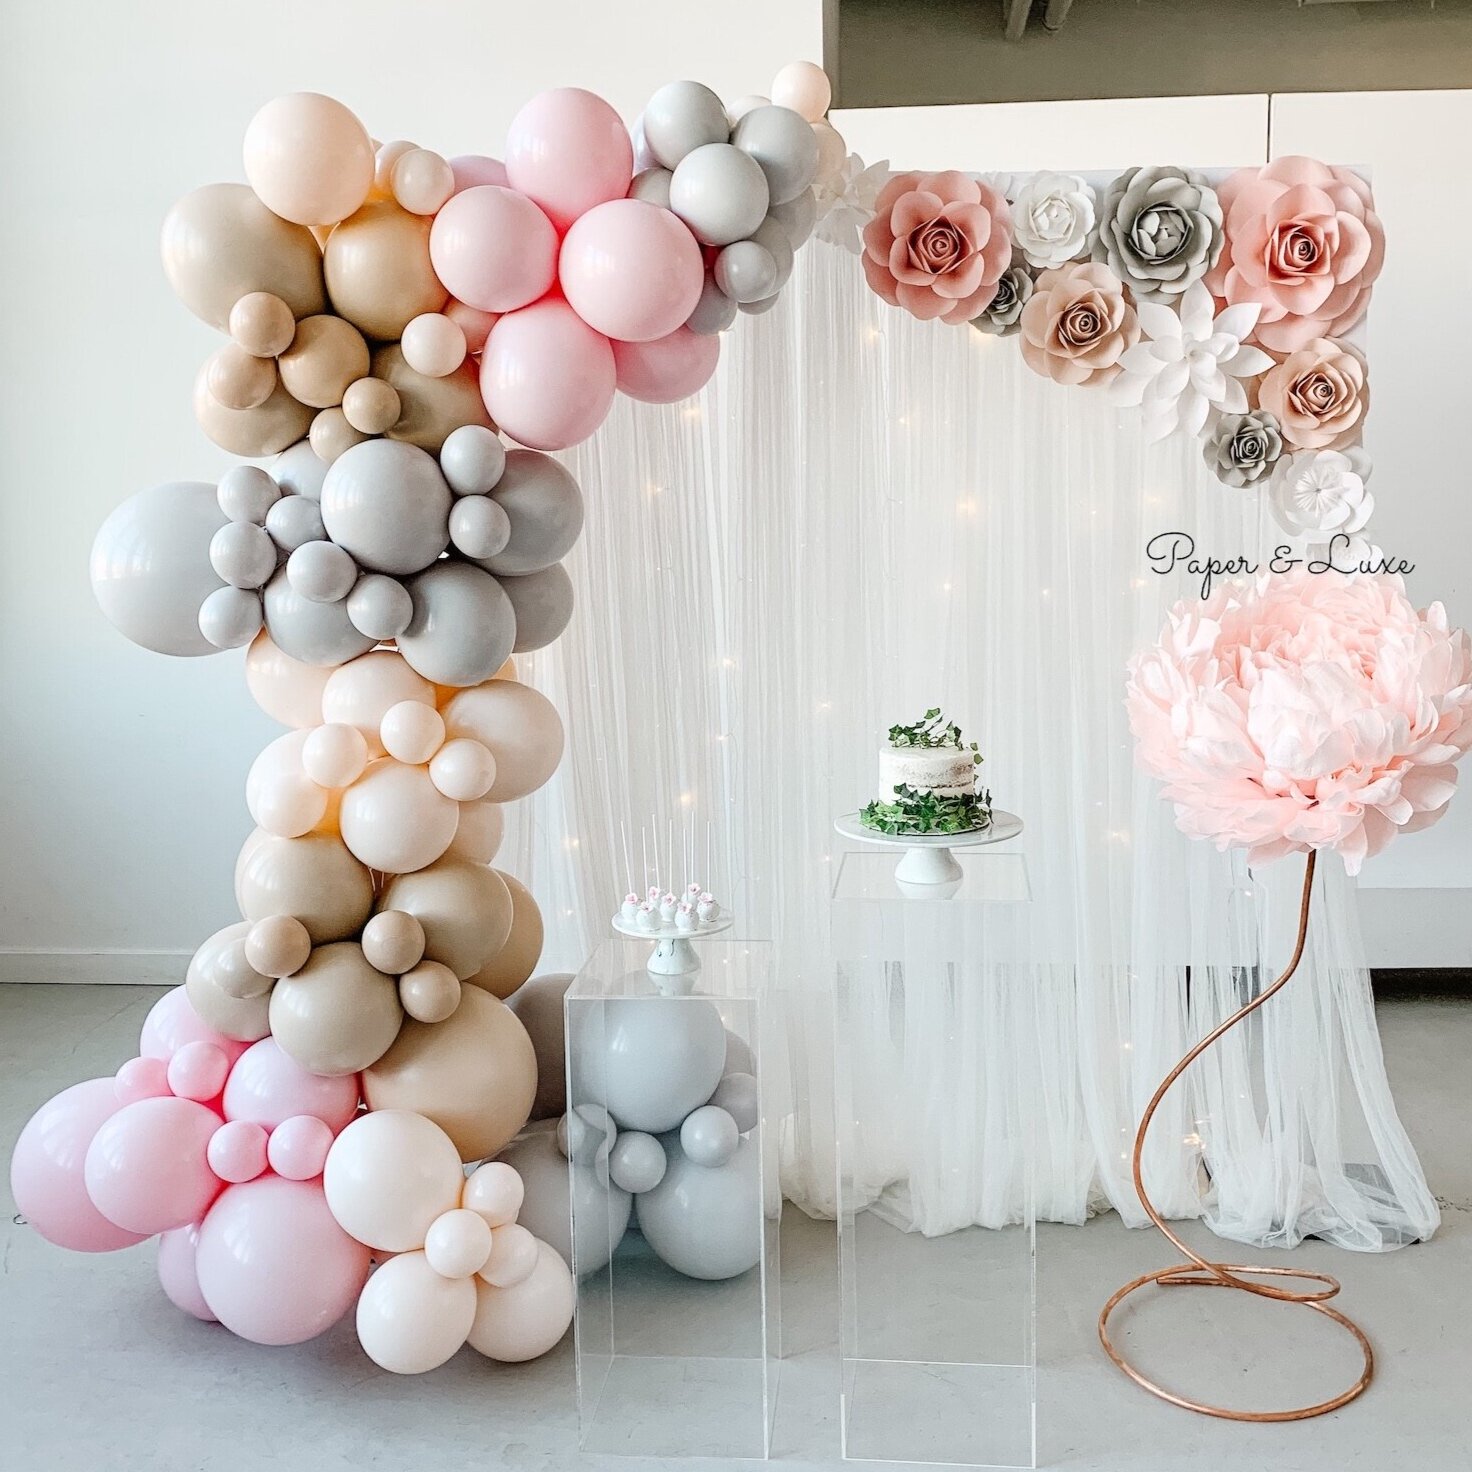 Luxury Balloon Displays